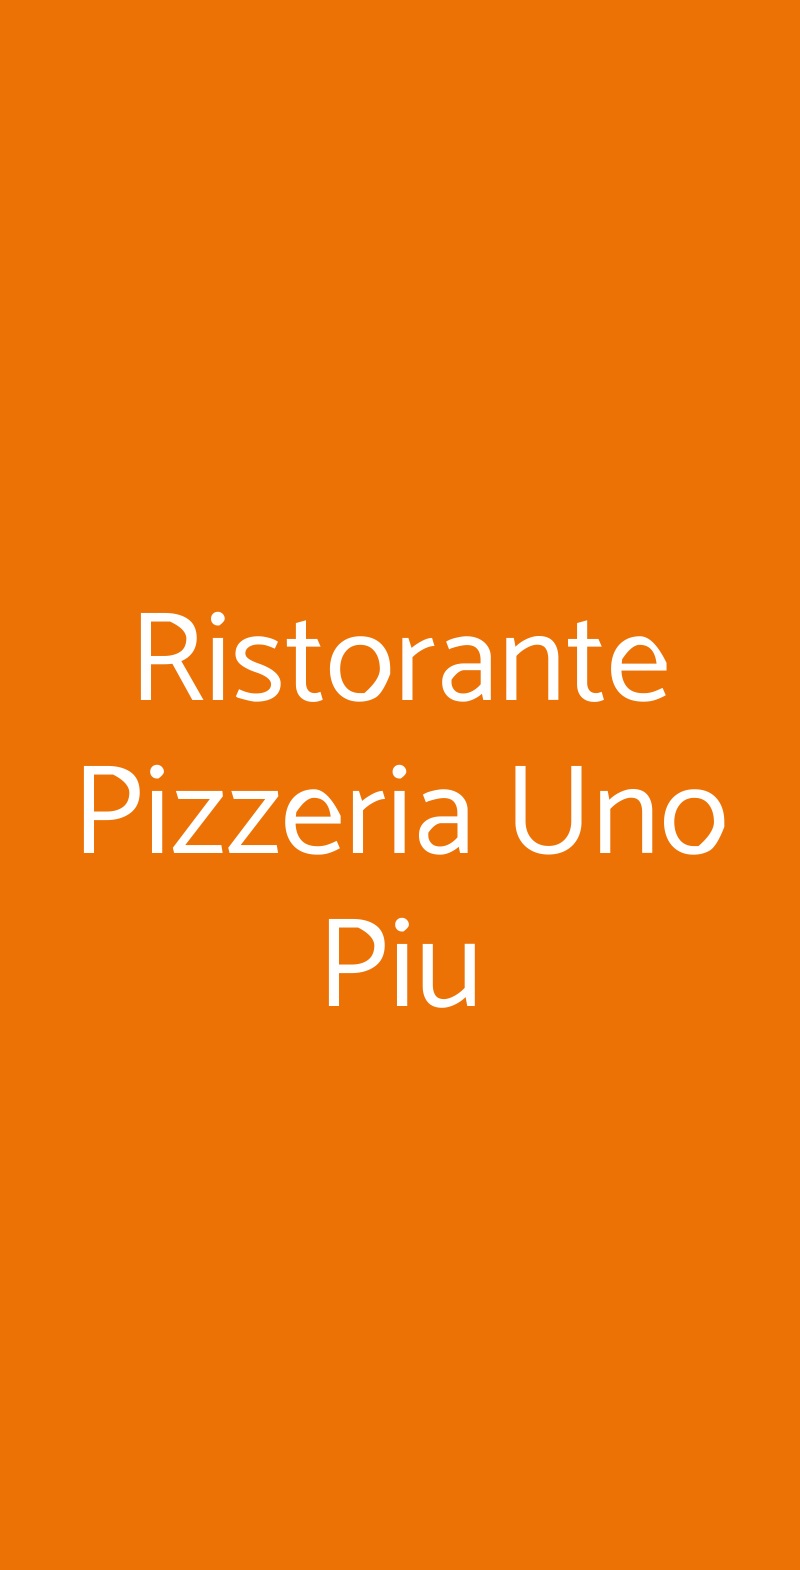 Ristorante Pizzeria Uno Piu Milano menù 1 pagina